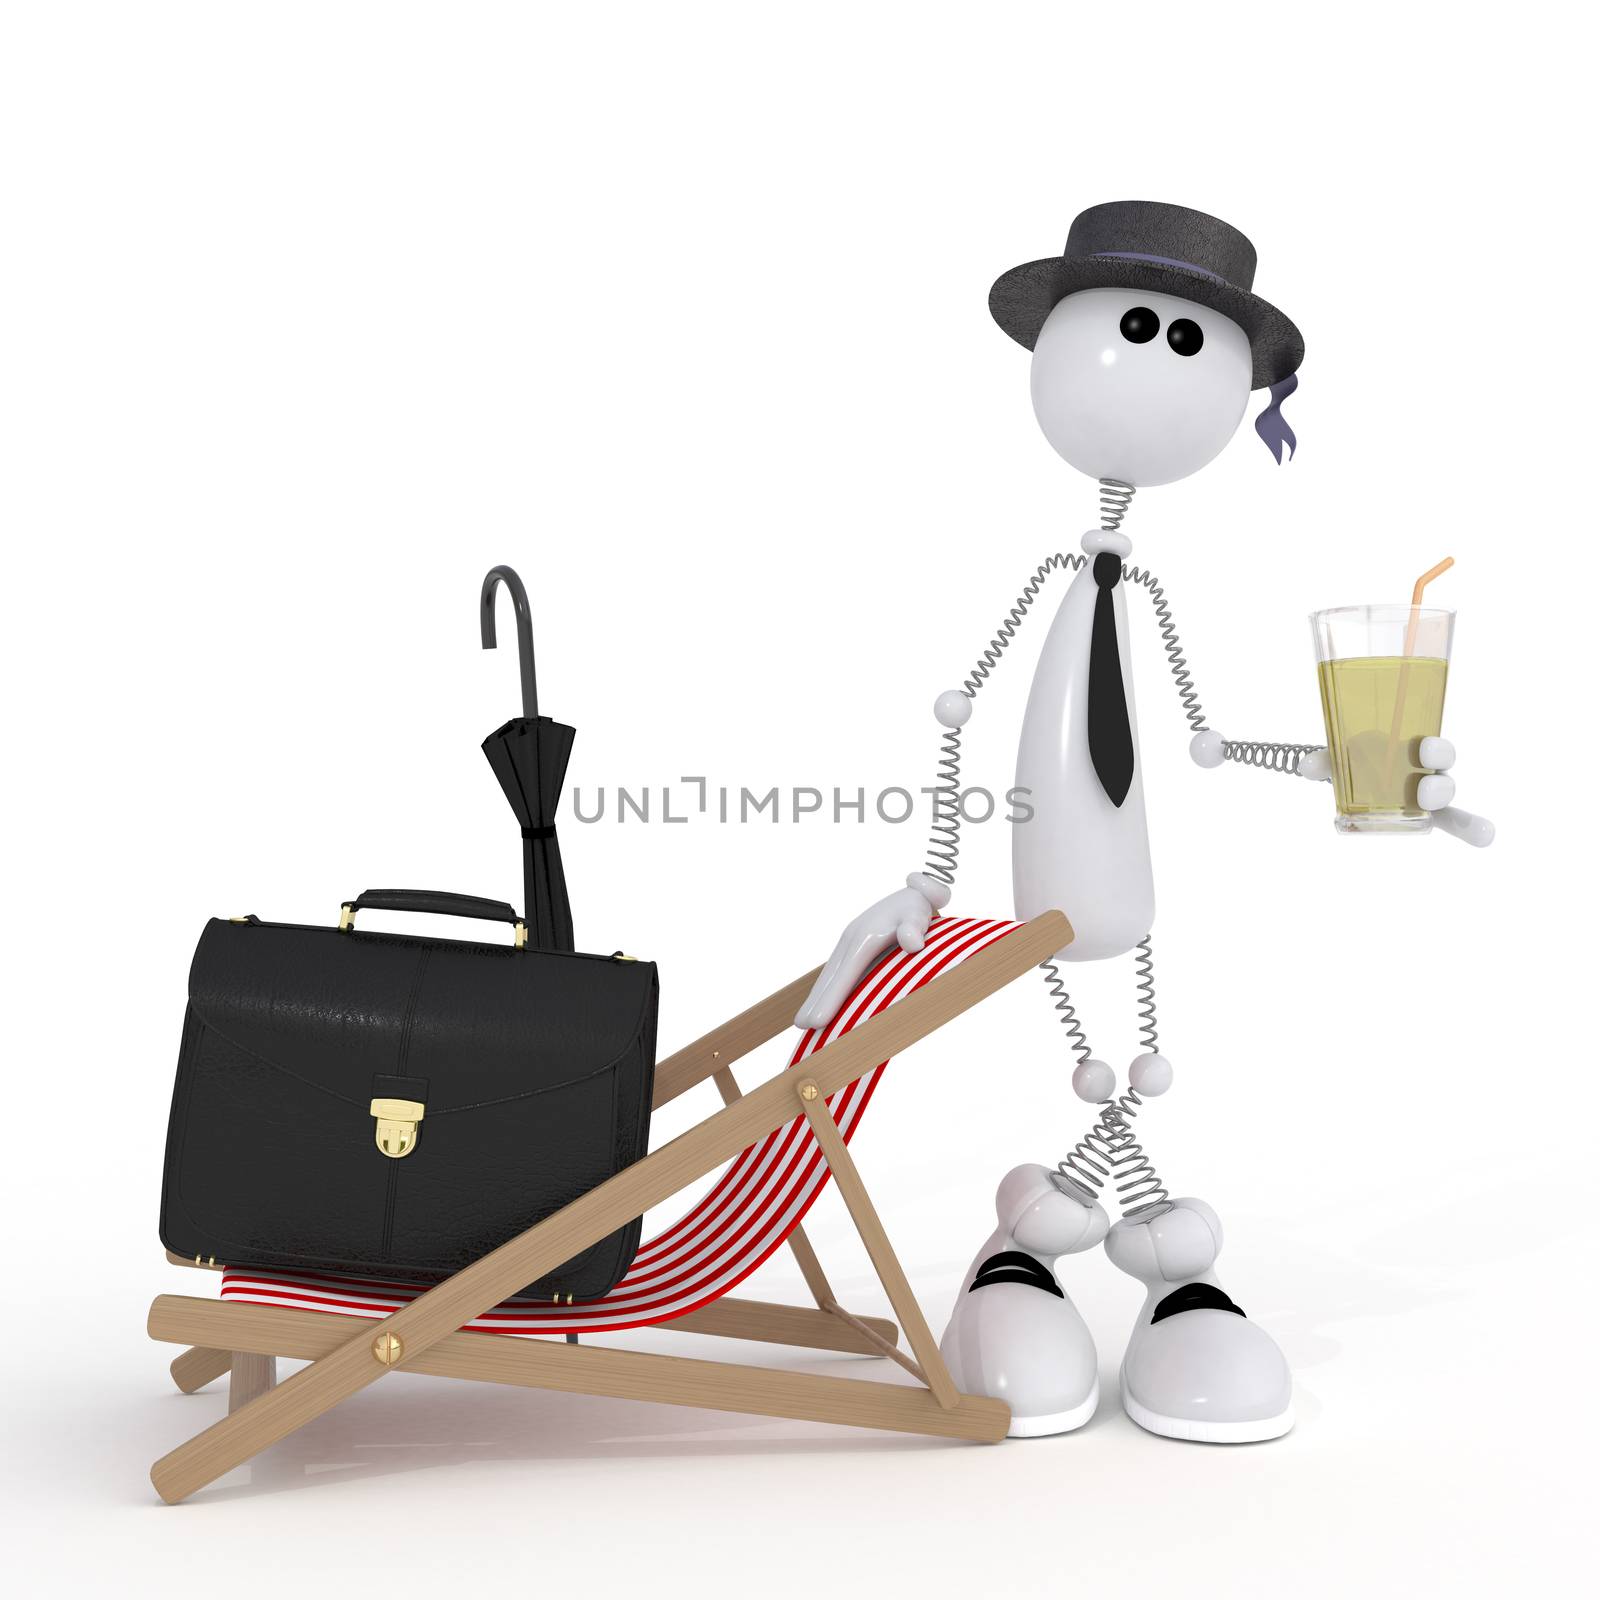 The 3D little businessman on a beach. by karelin721